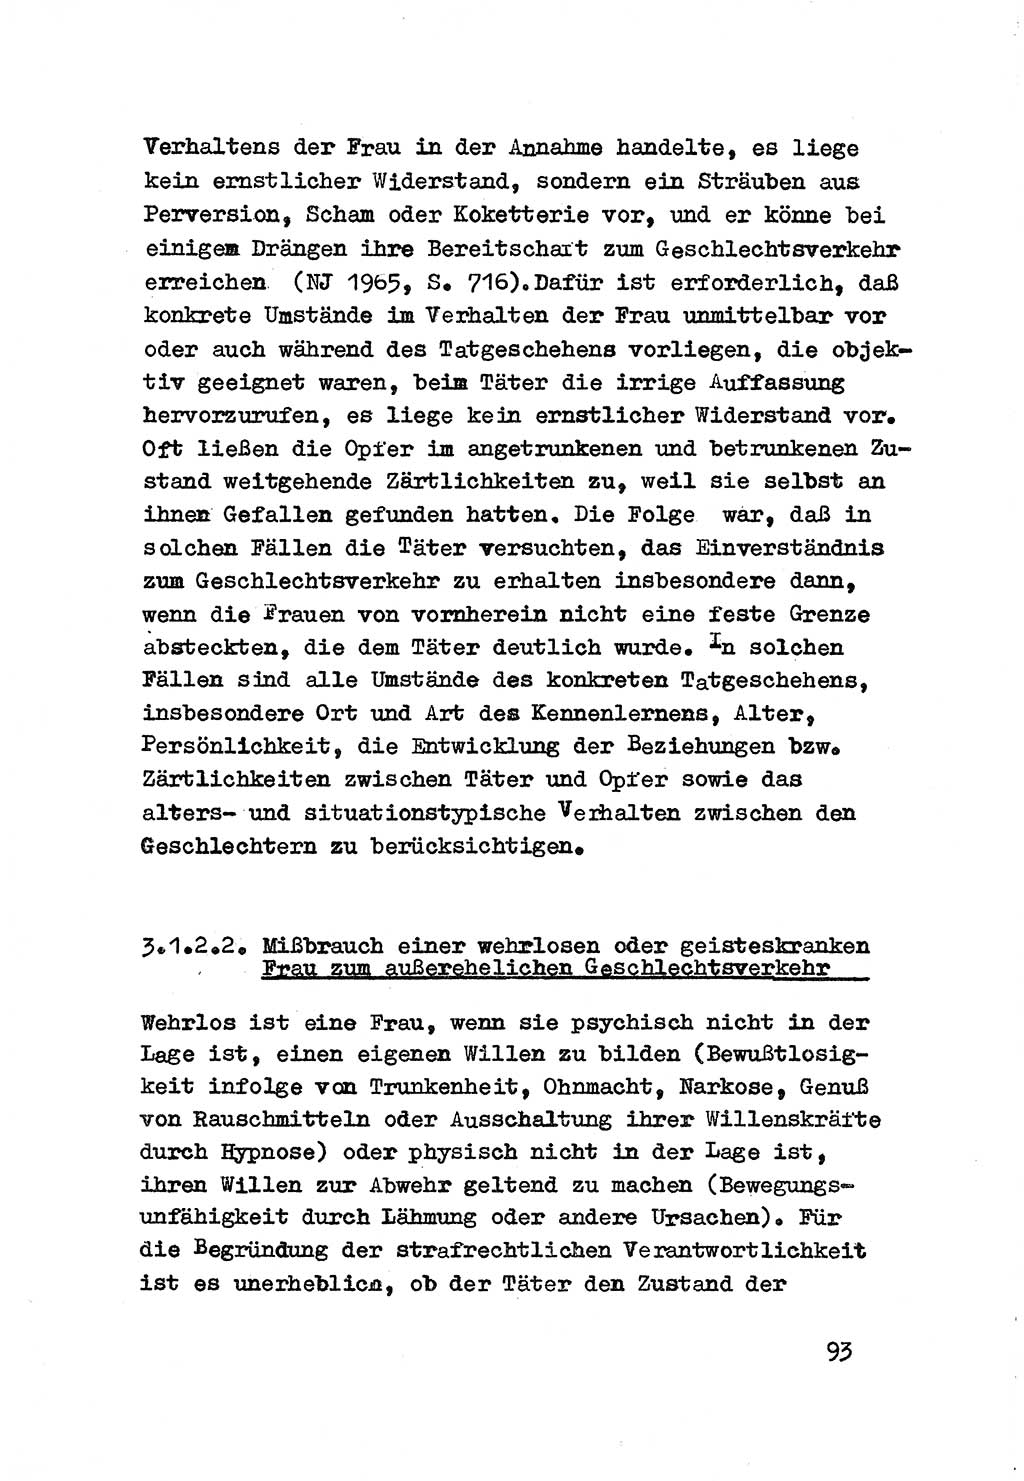 Strafrecht der DDR (Deutsche Demokratische Republik), Besonderer Teil, Lehrmaterial, Heft 3 1969, Seite 93 (Strafr. DDR BT Lehrmat. H. 3 1969, S. 93)